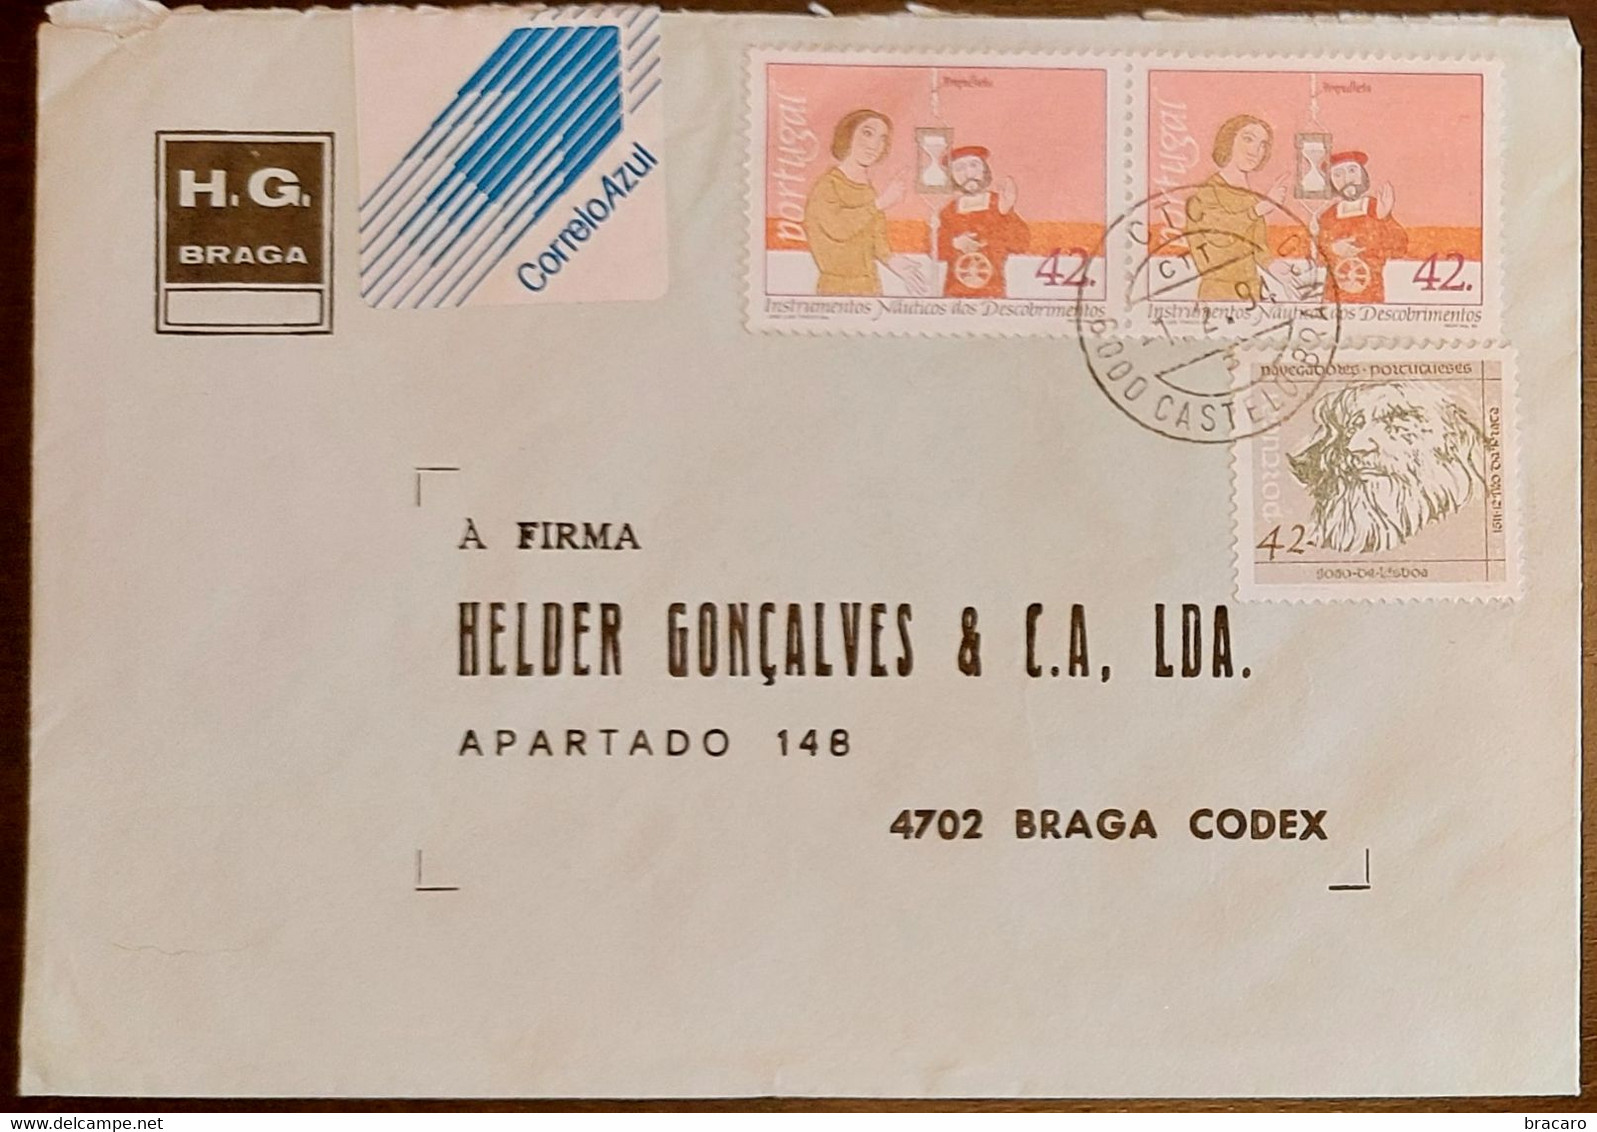 PORTUGAL - Cover 1.2.1994 - Cancel Castelo Branco - Stamps Instrumentos Náuticos + Navegadores 42$00 - H.G. Braga - Covers & Documents